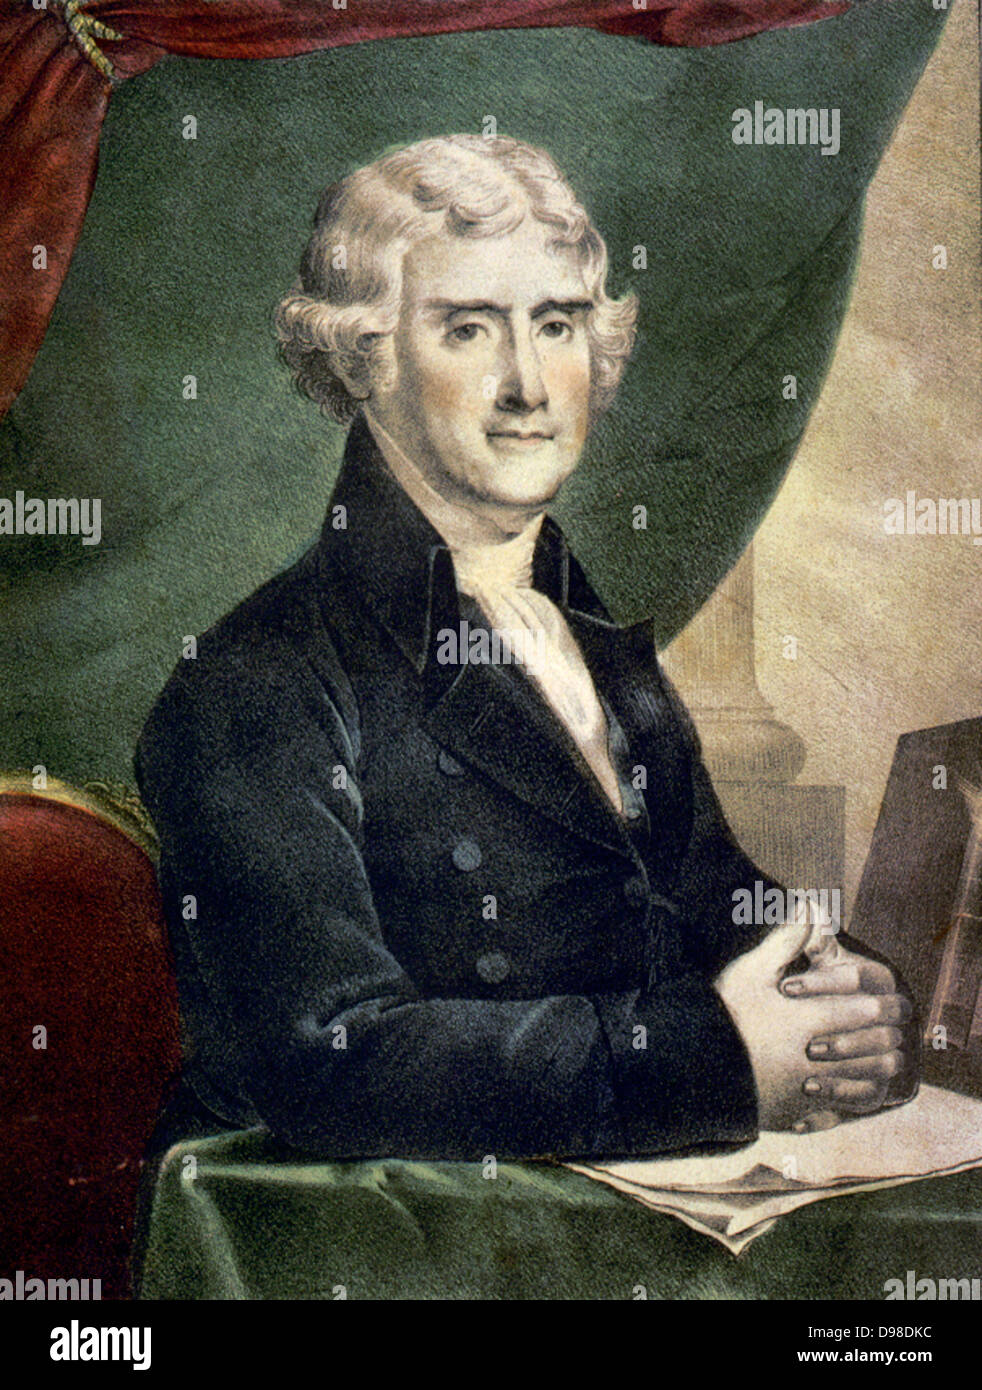 Thomas Jefferson (1743-1826), dritter Präsident der Vereinigten Staaten 1801-1809. Farbige Lithographie Brustbild von Jefferson am Schreibtisch sitzt, c 1845. Stockfoto